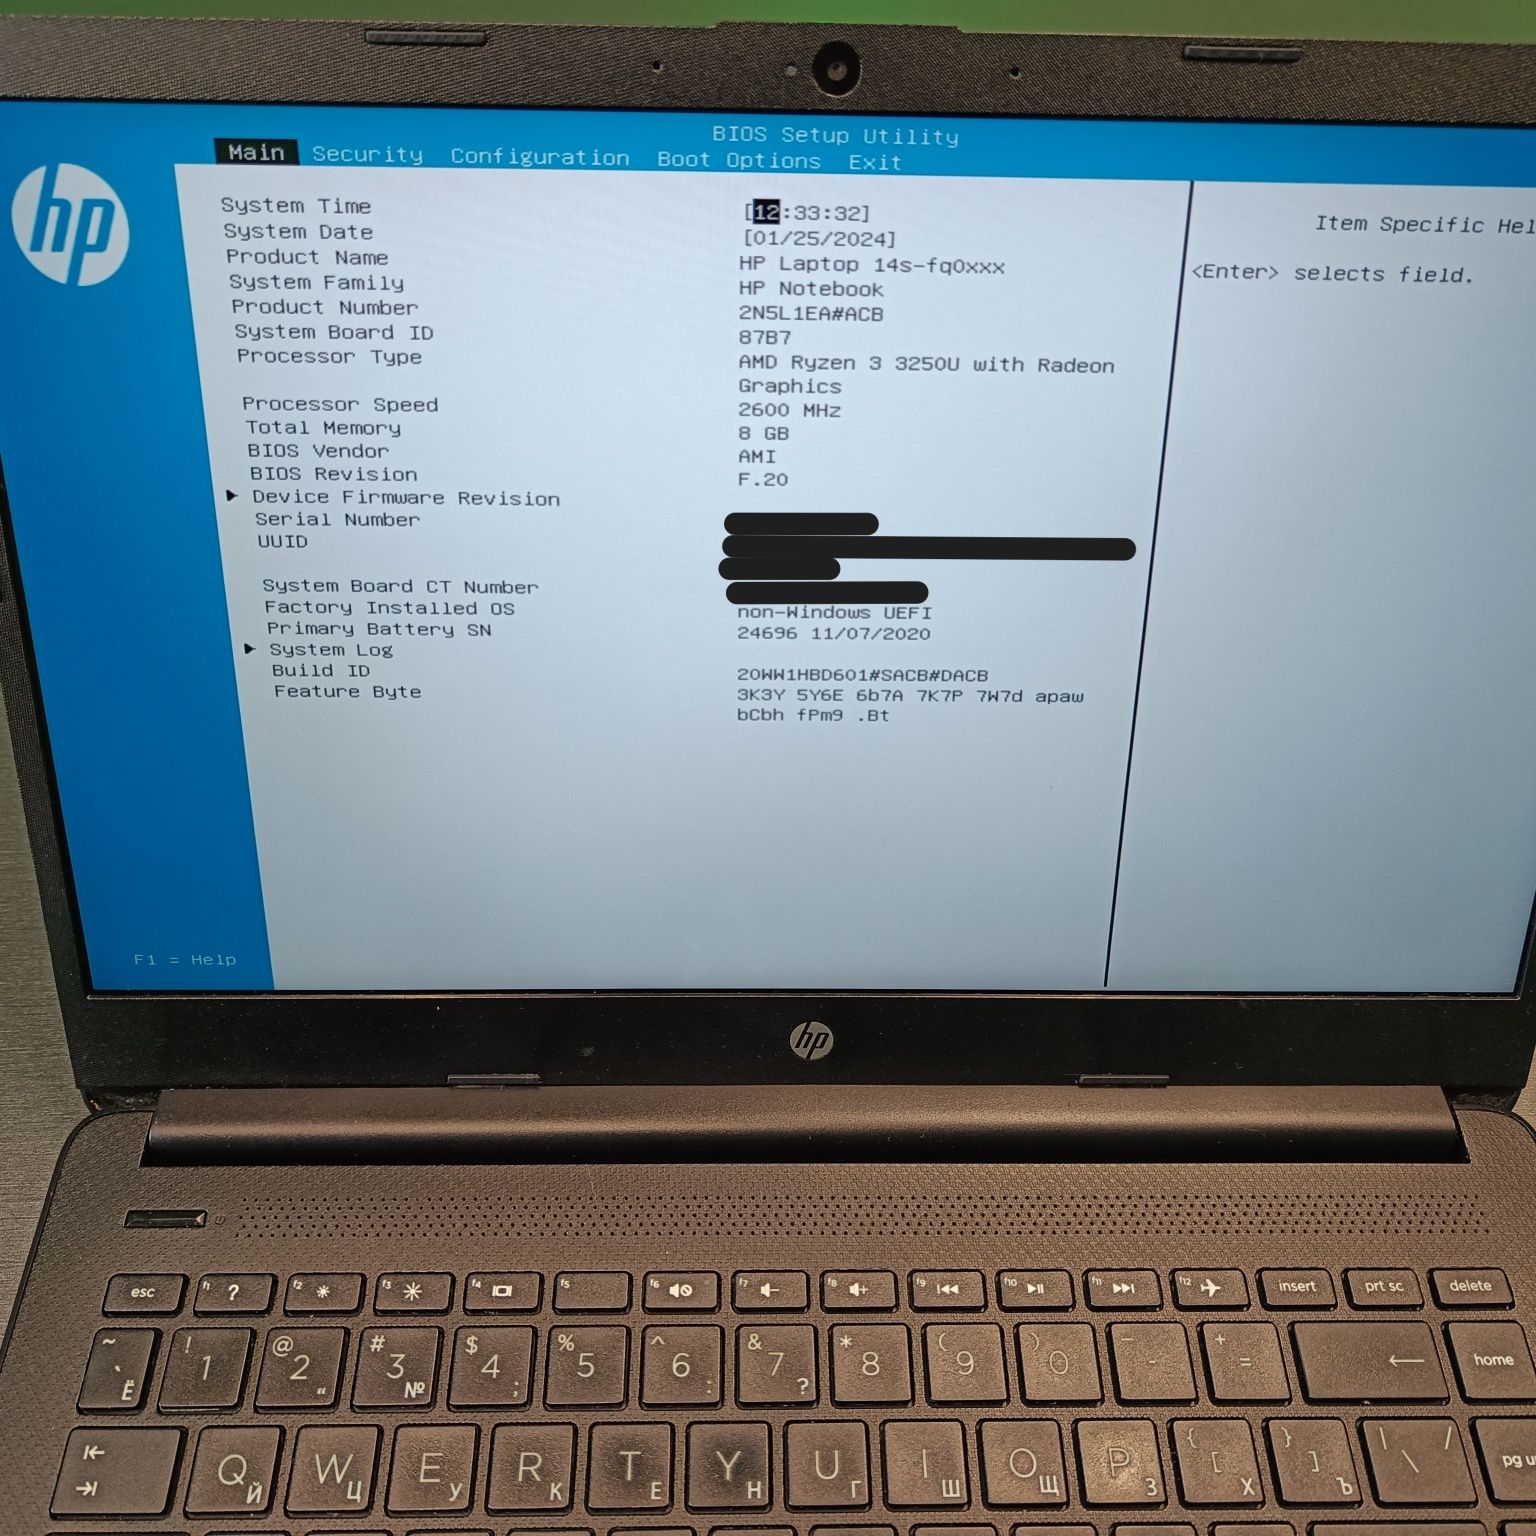 Ноутбук HP 14s-fq0061ur (2N5L1EA)